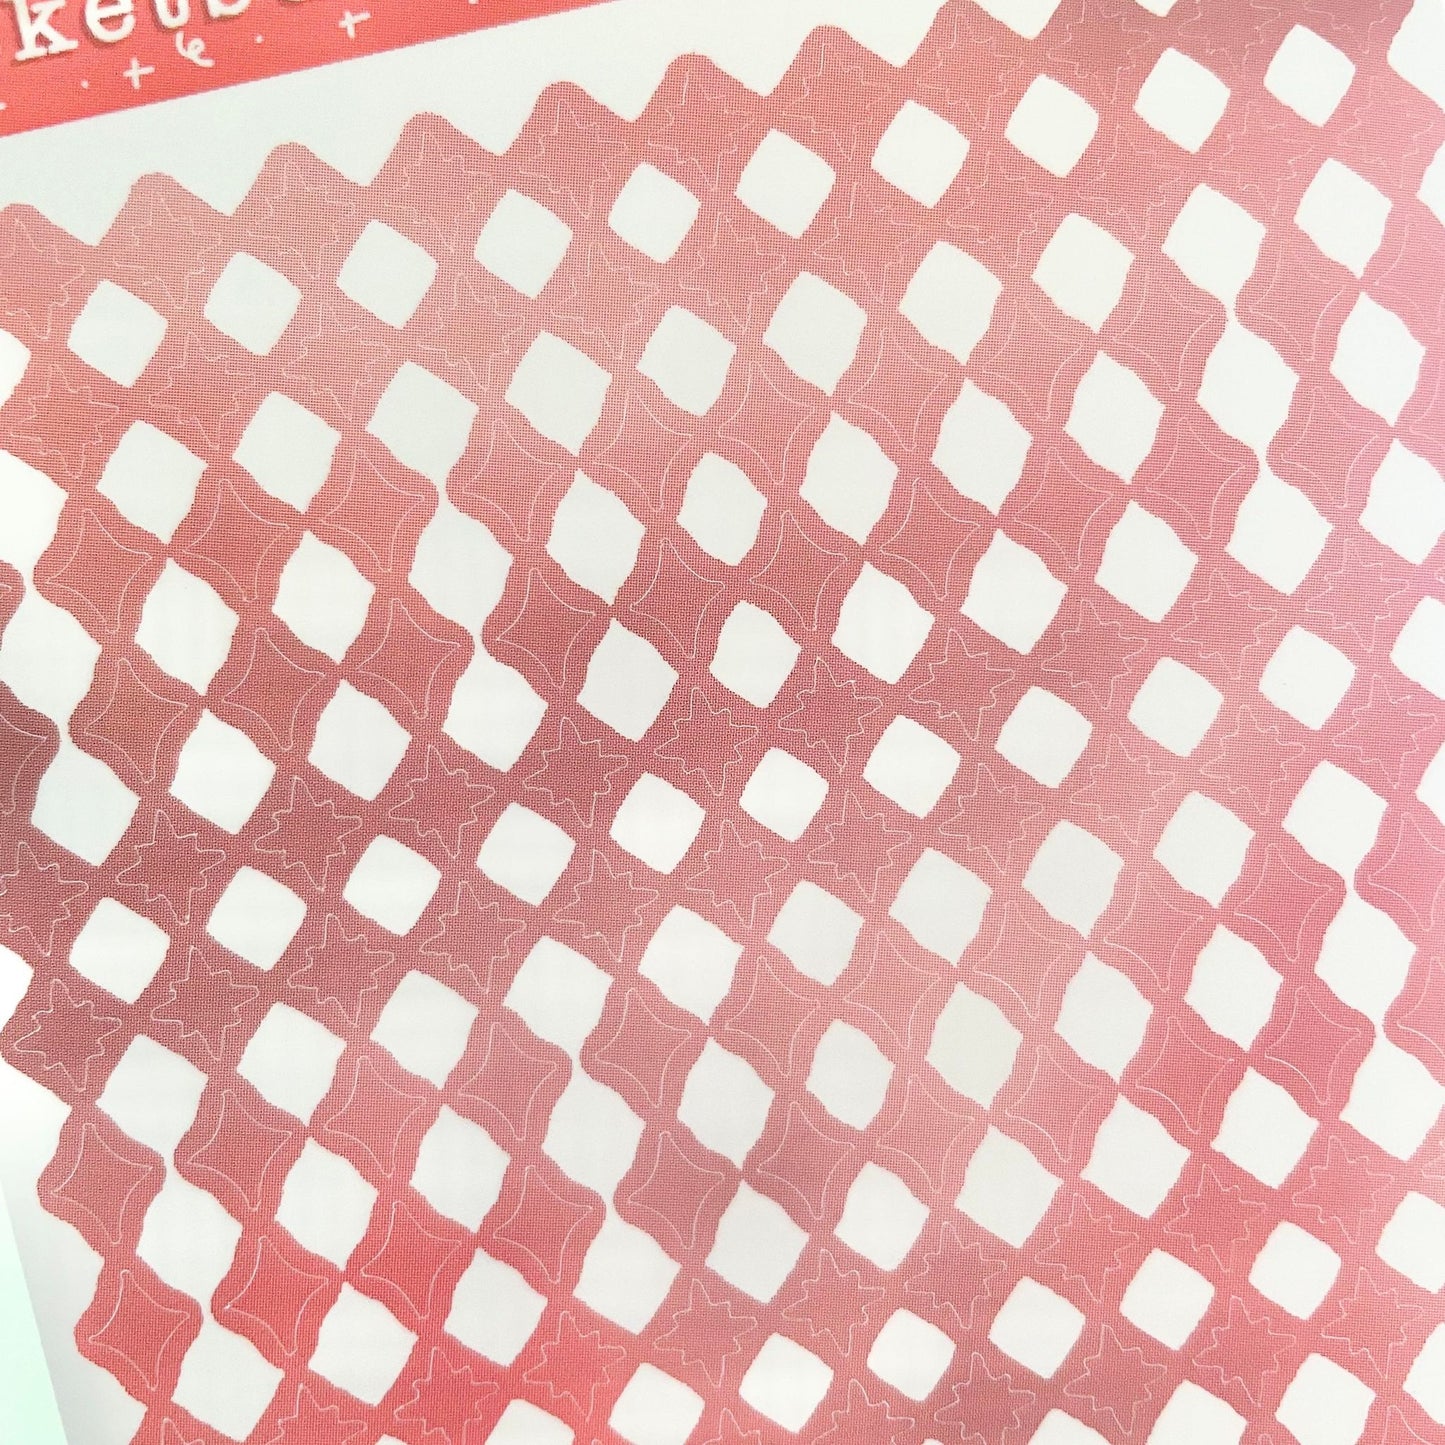 Matte Sparkle Deco Vinyl Sticker Sheets